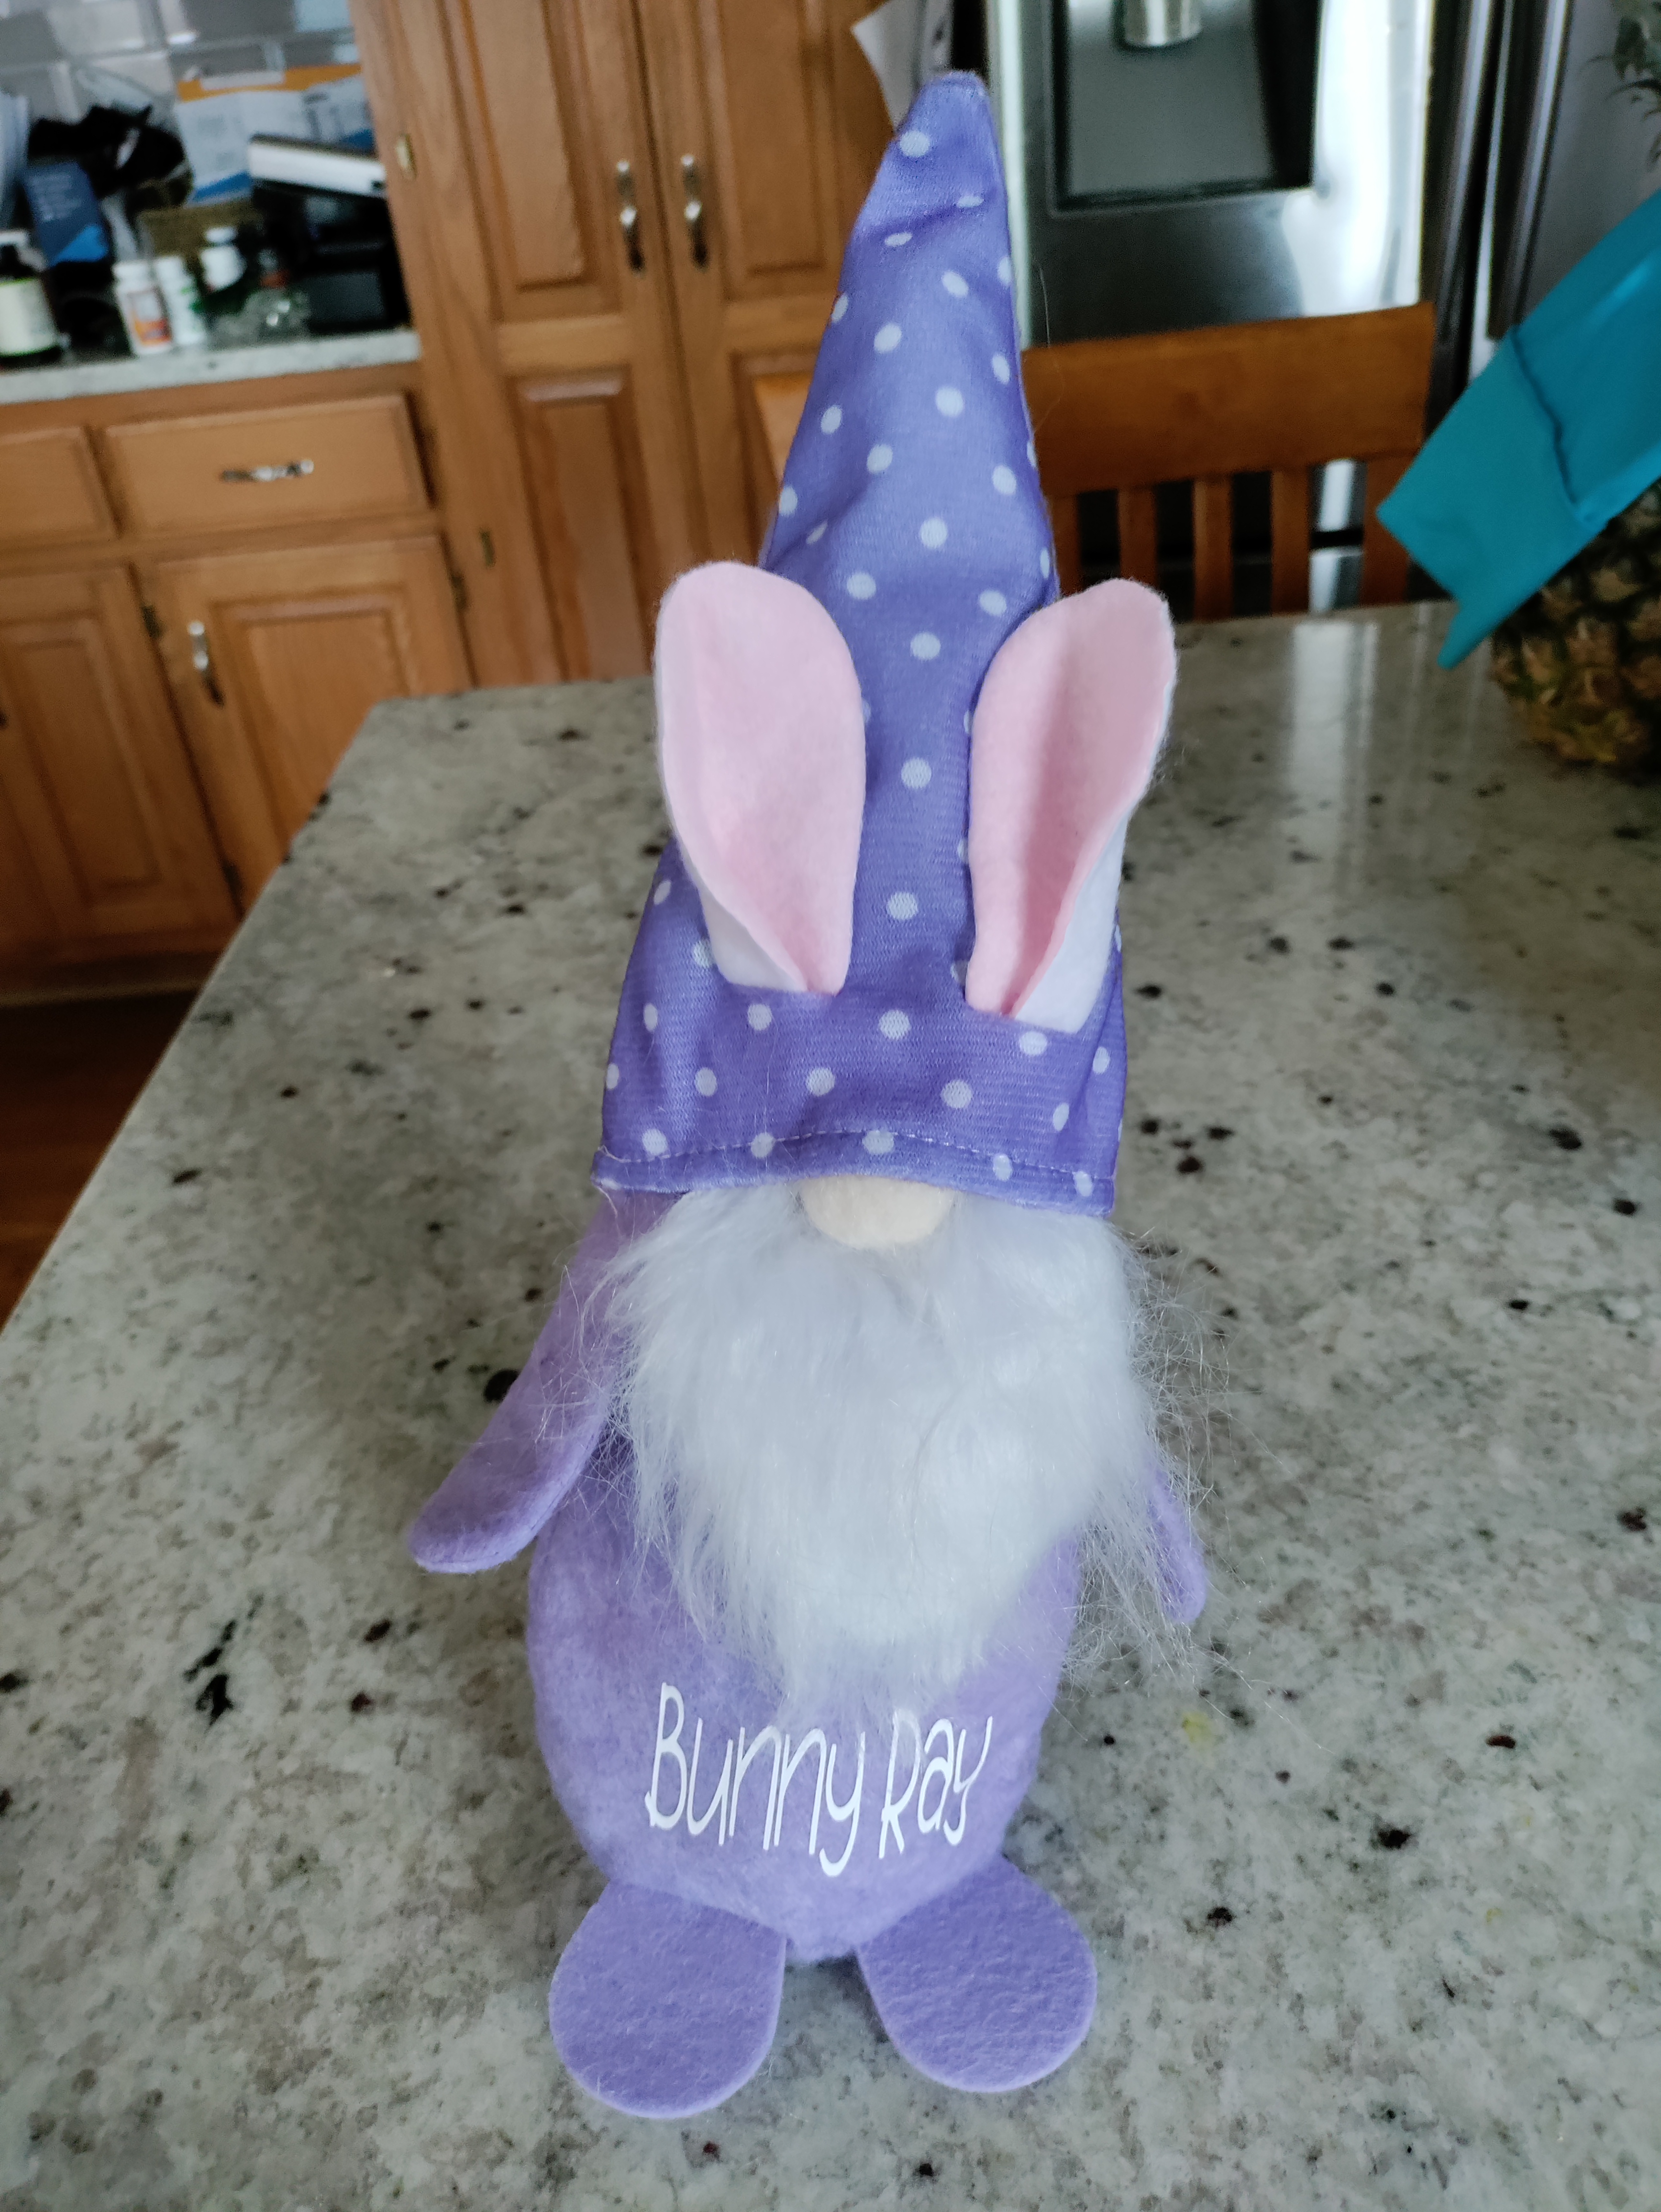 Bunny Ray Gnome – Part of the Wandering Gnome Family – Egggapalooza 2022